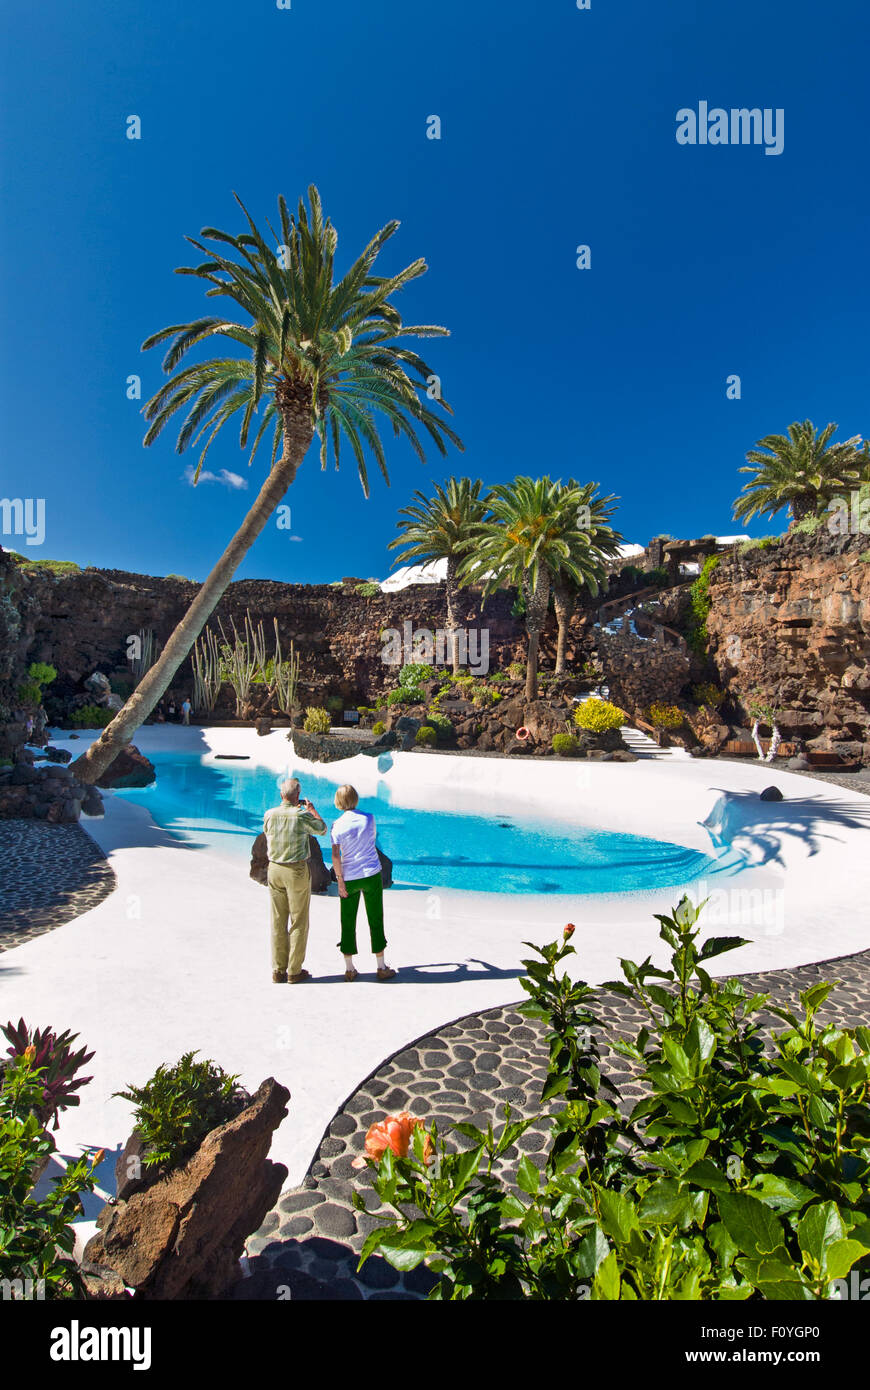 Jameos del Agua LANZAROTE Tourist couple taking photo de piscine turquoise clair avec palmiers et plantes tropicales, Manrique, Lanzarote Iles Canaries Espagne Banque D'Images